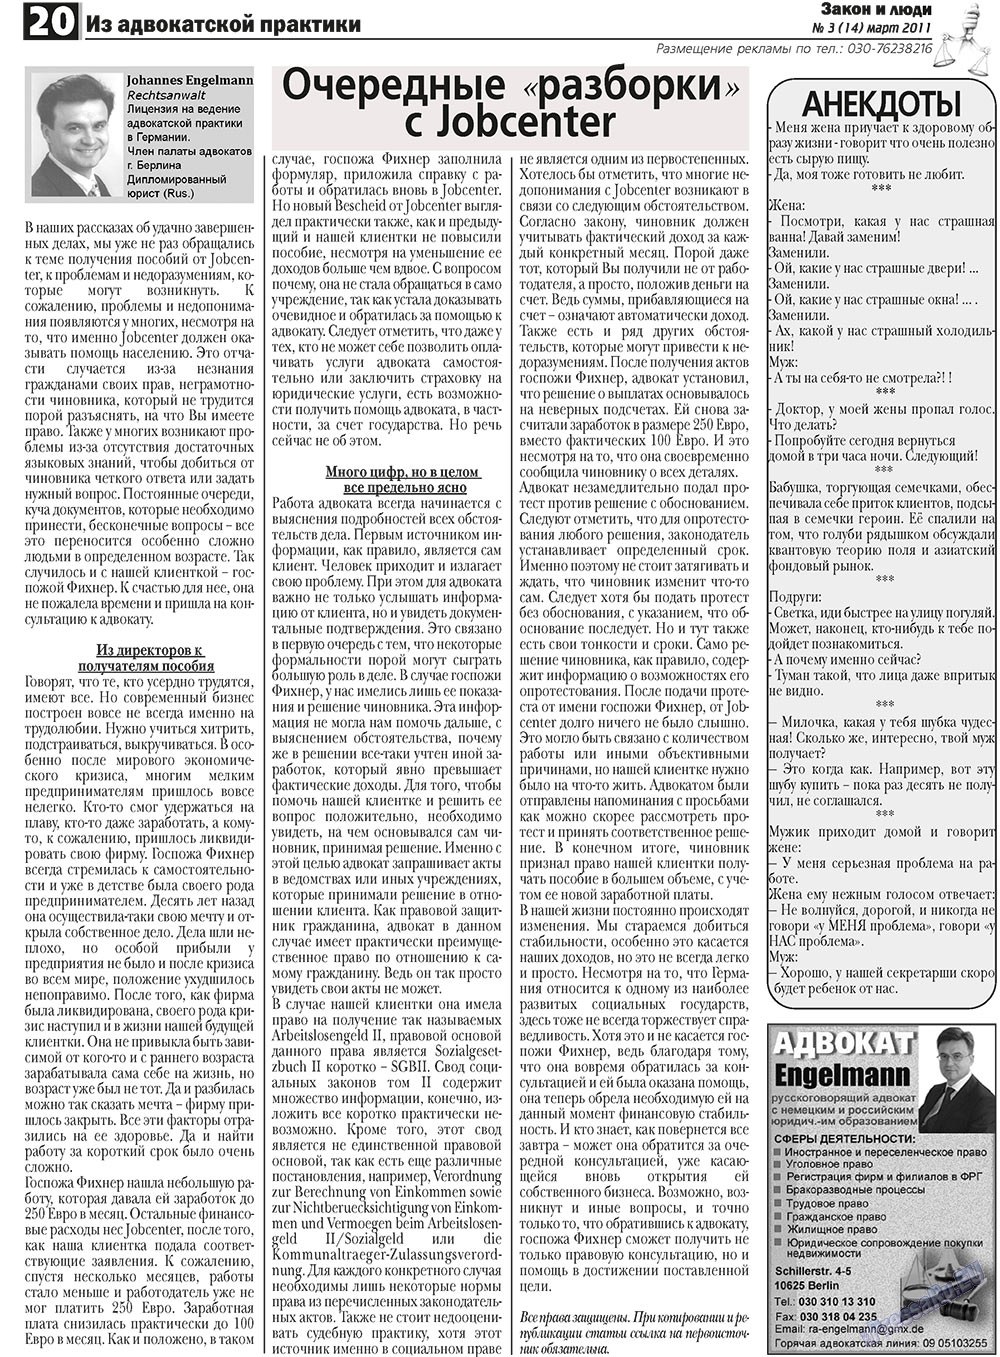 Закон и люди, газета. 2011 №3 стр.20